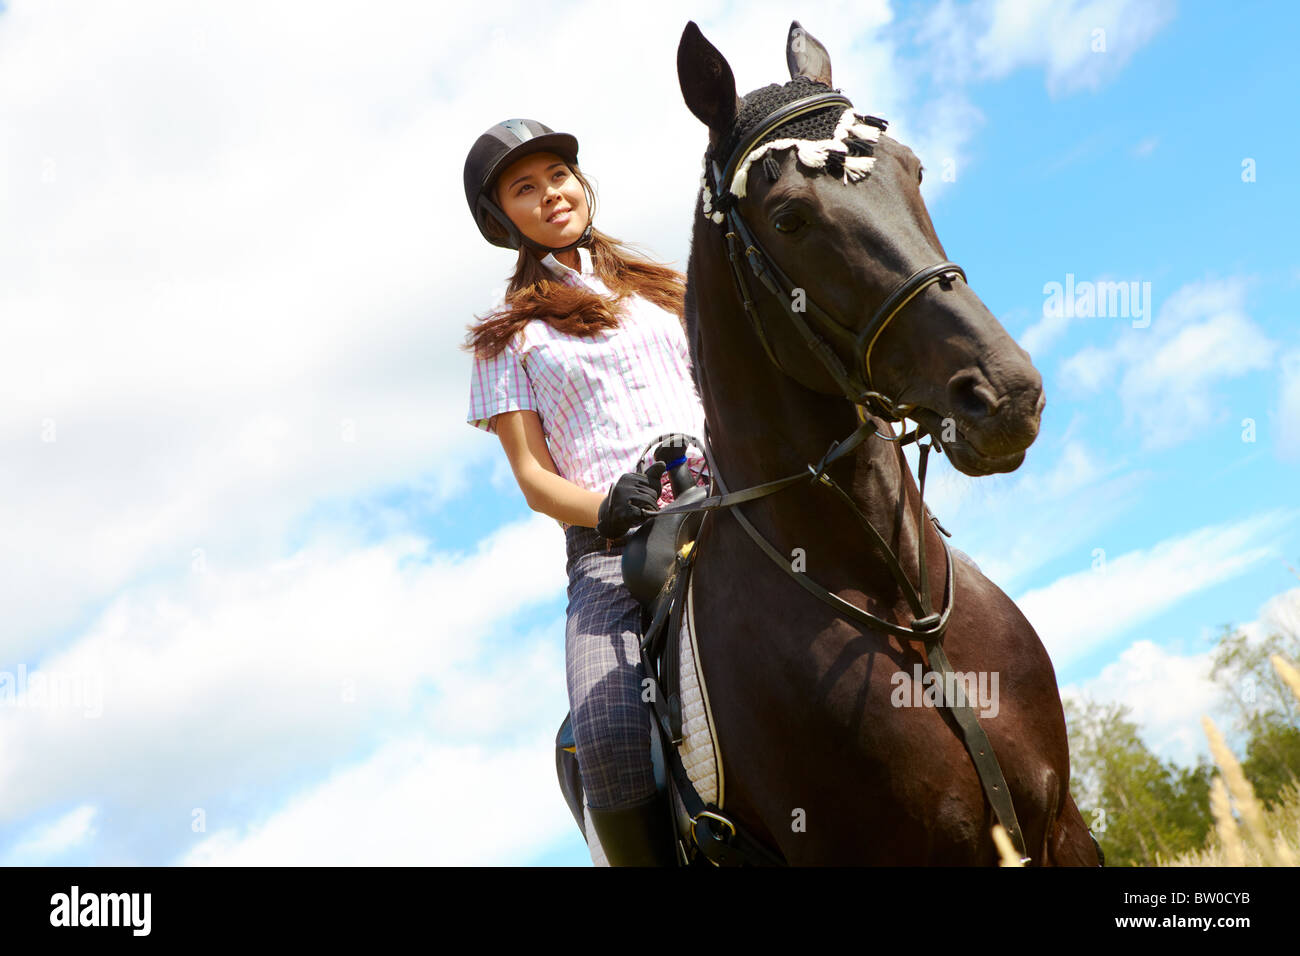 Хорс киев. Верховая езда. Девушка в шлеме и лошадь. Девушка катается на лошади. Девочка на лошади в шлеме.